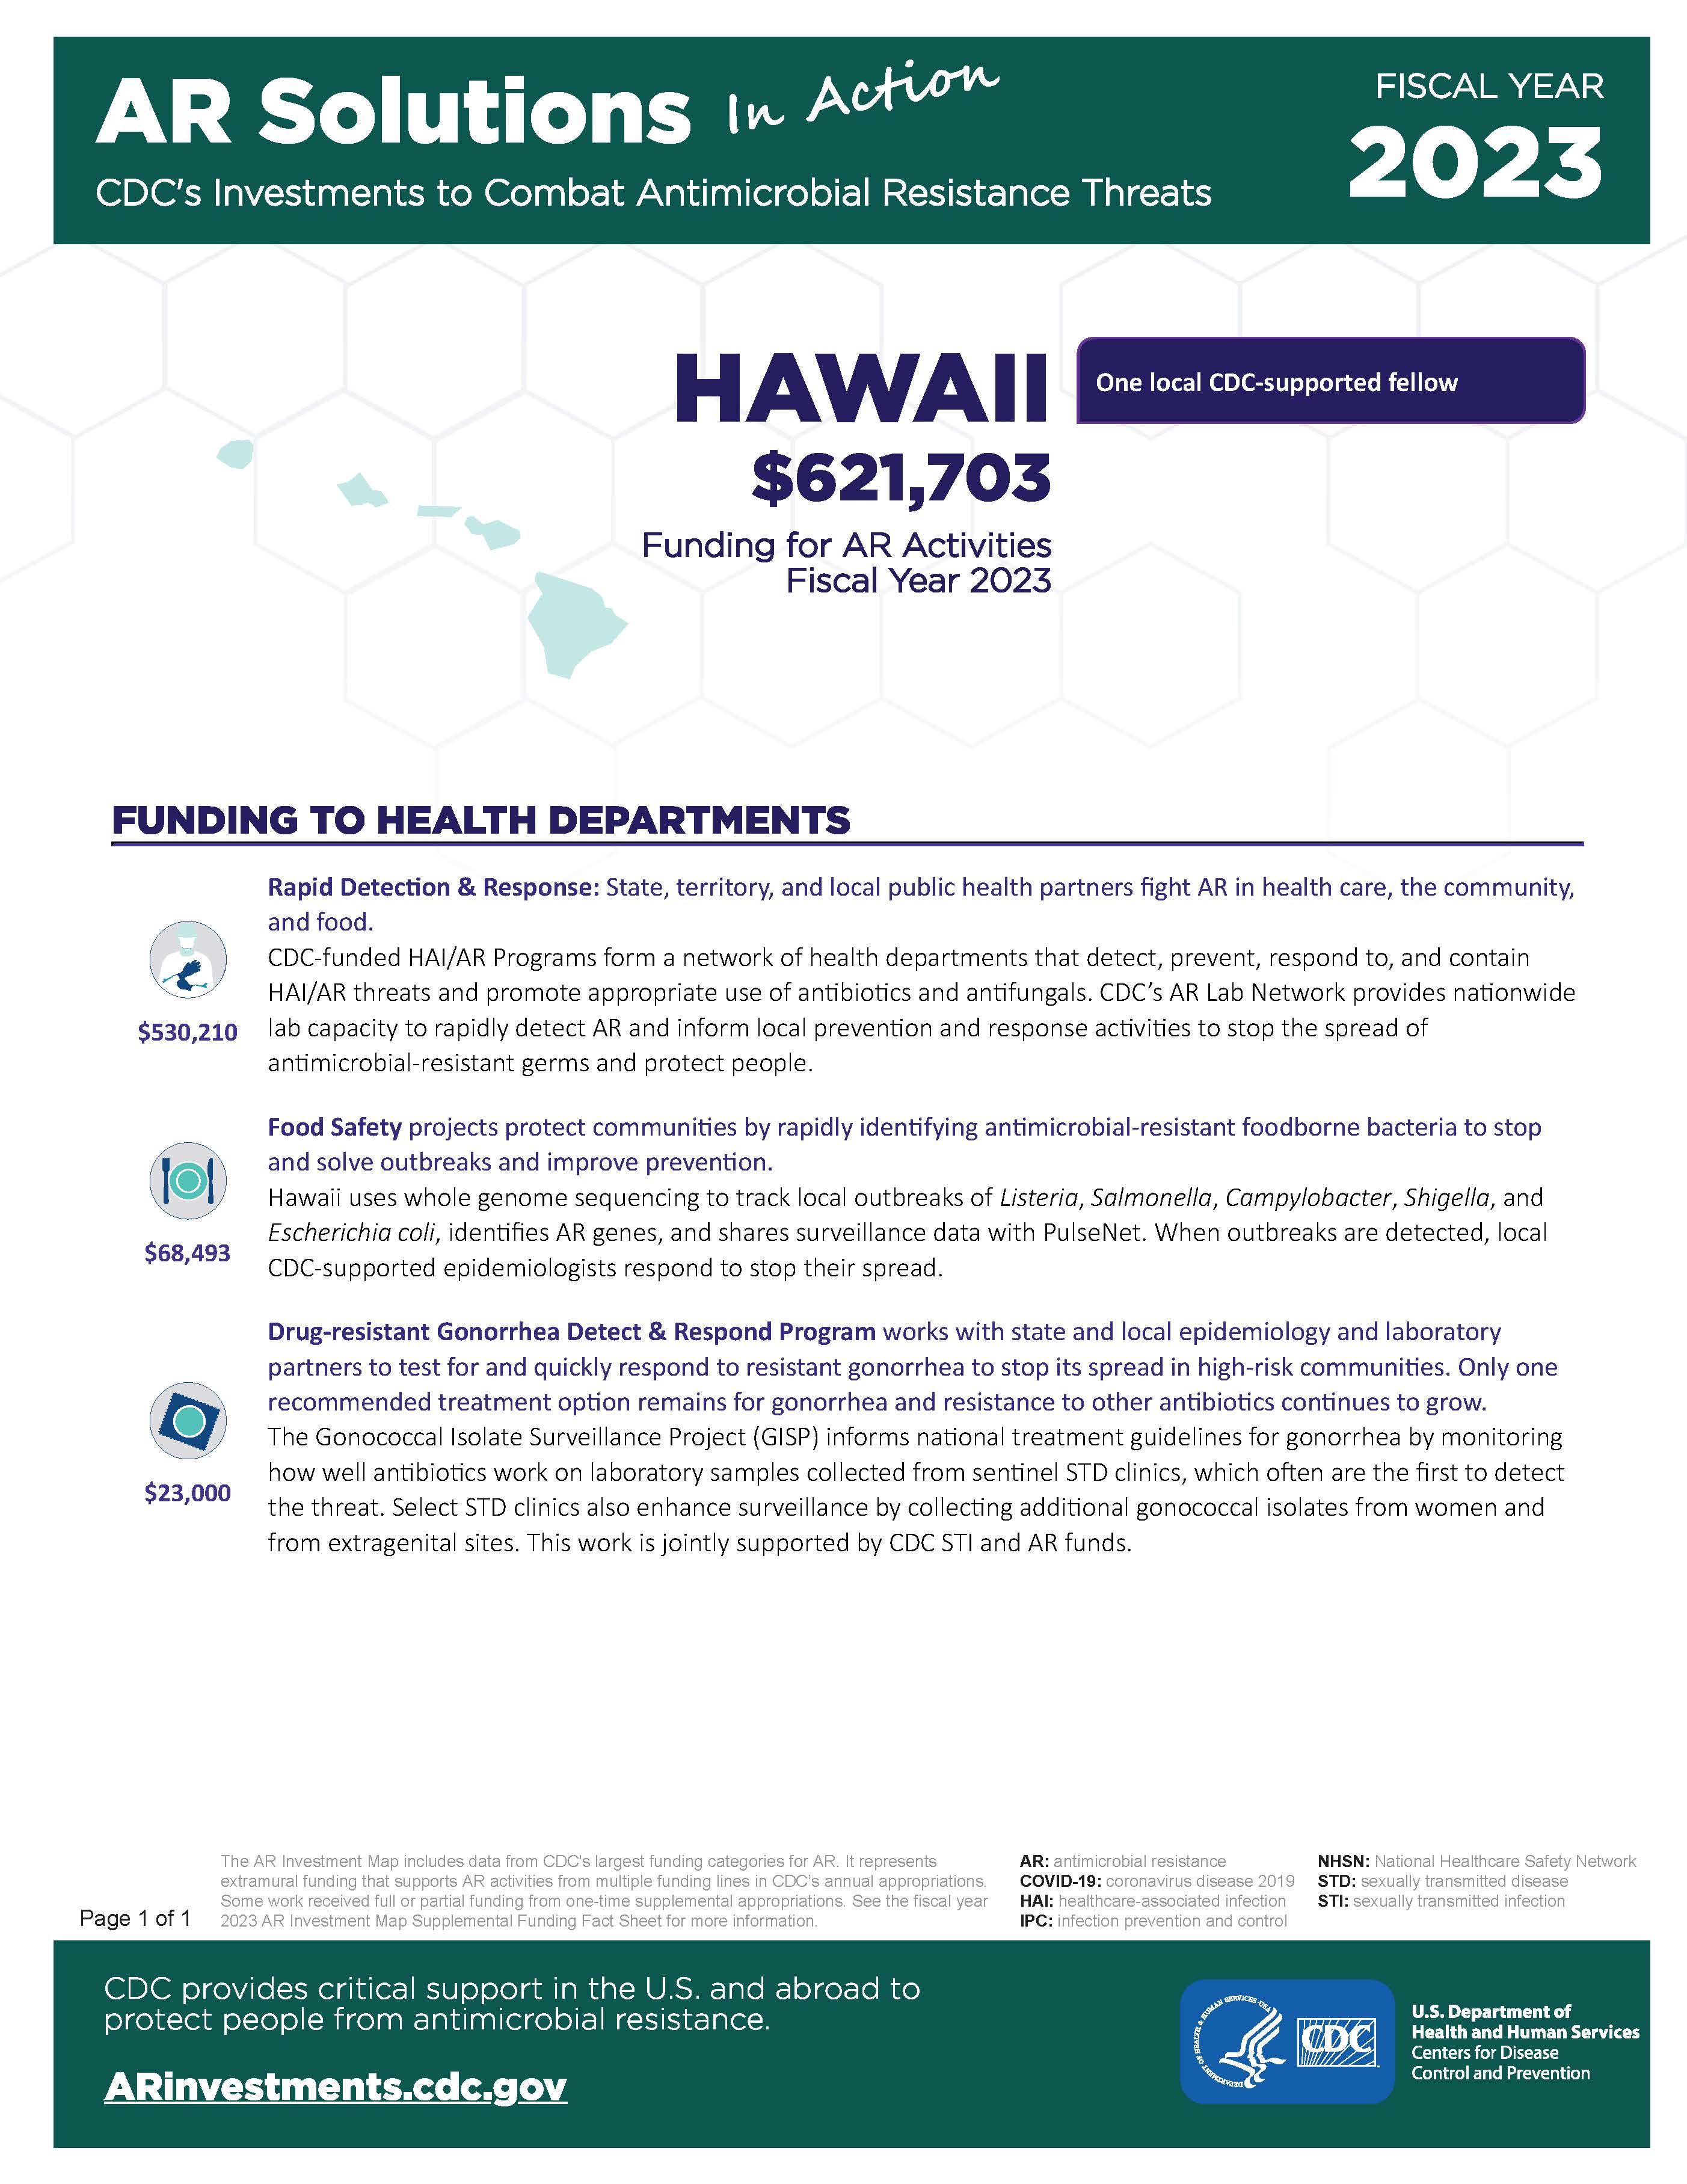 View Factsheet for Hawaii